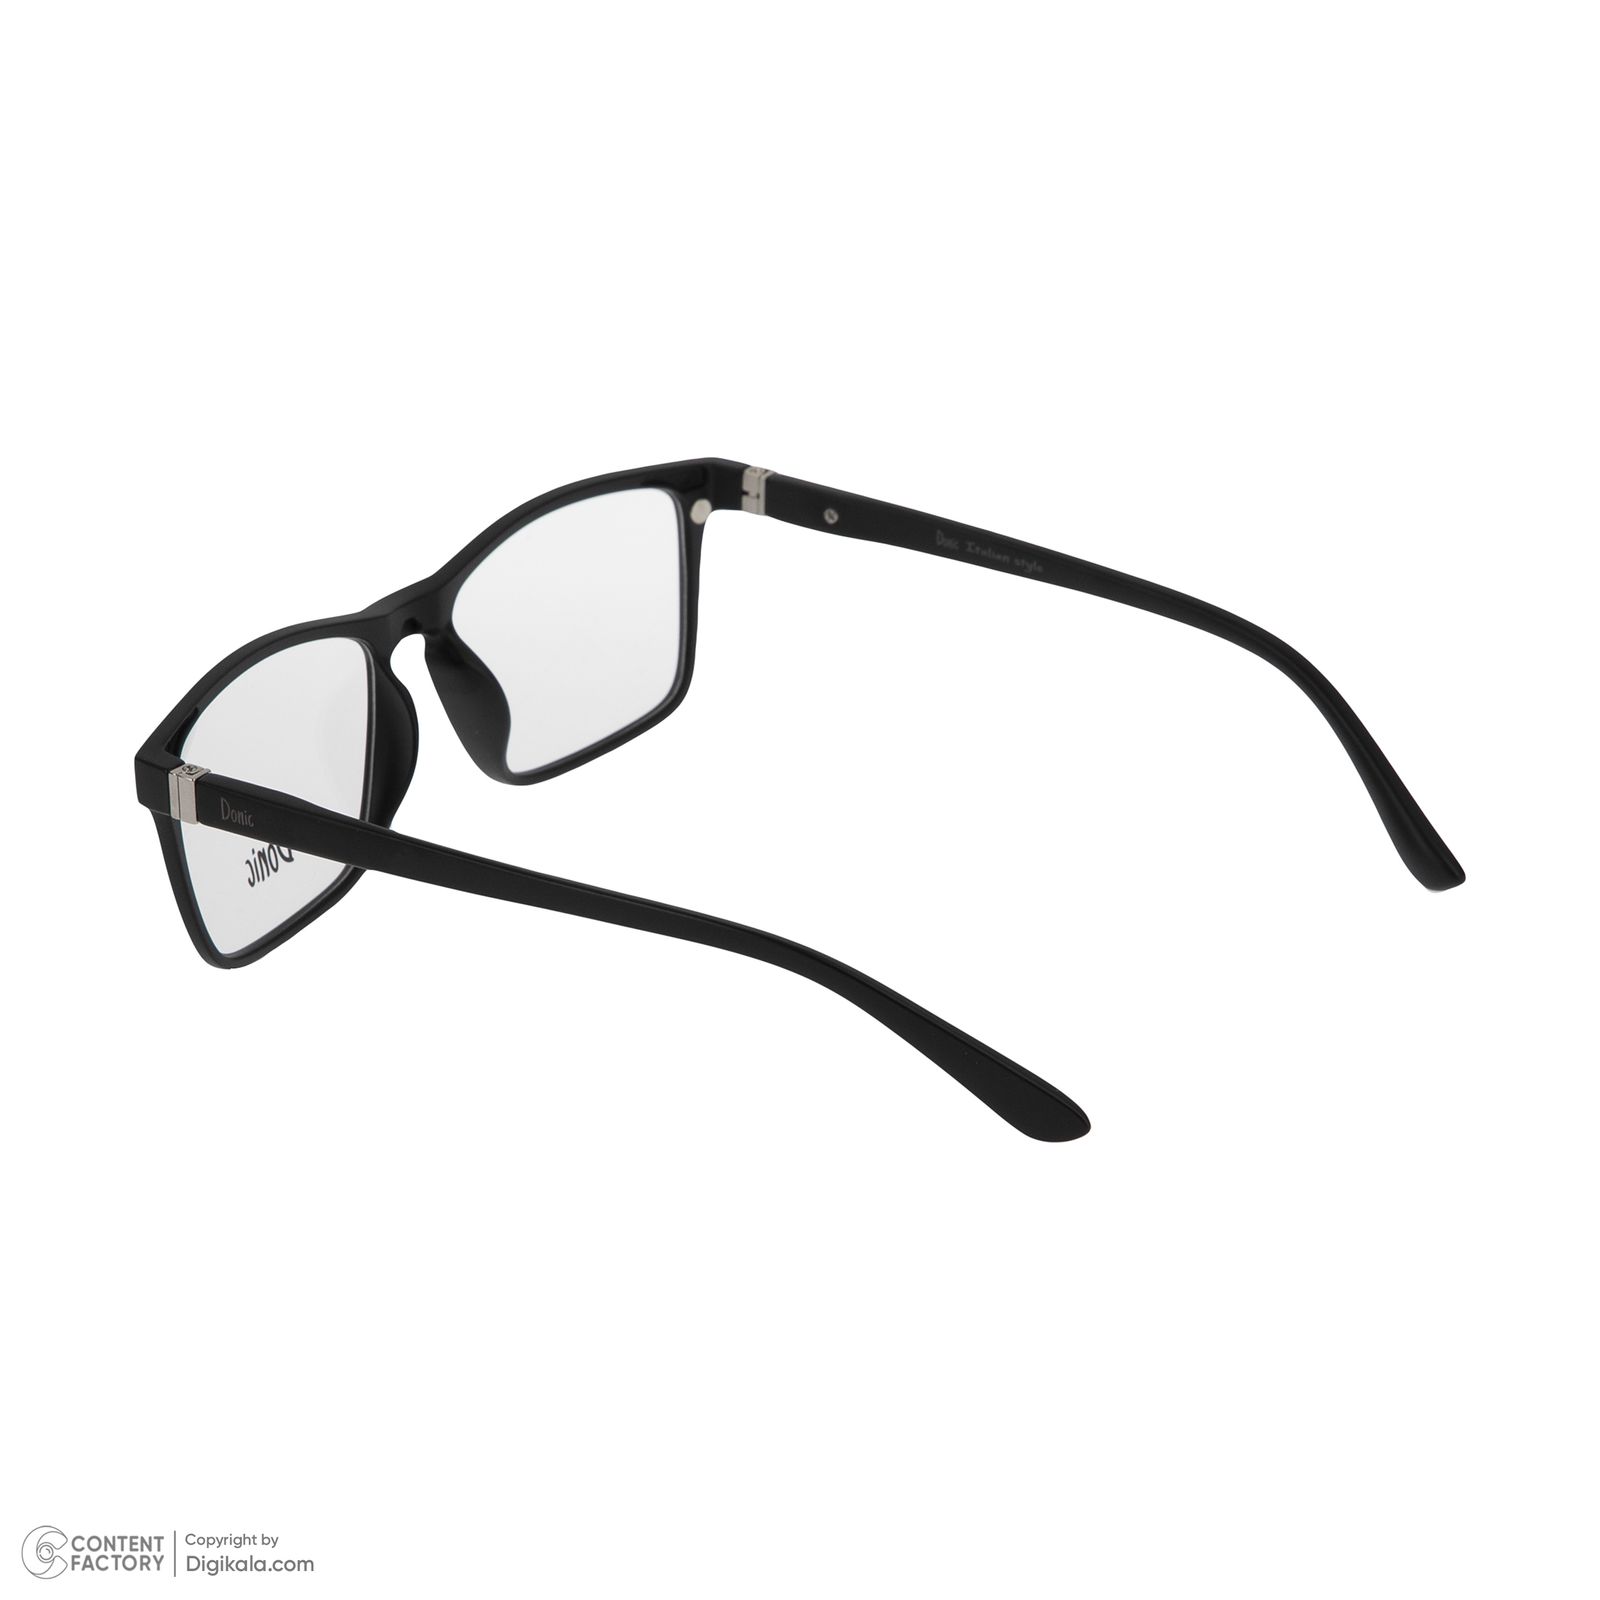 فریم عینک طبی دونیک مدل tr2268-c2 به همراه کاور آفتابی مجموعه 6 عددی -  - 5